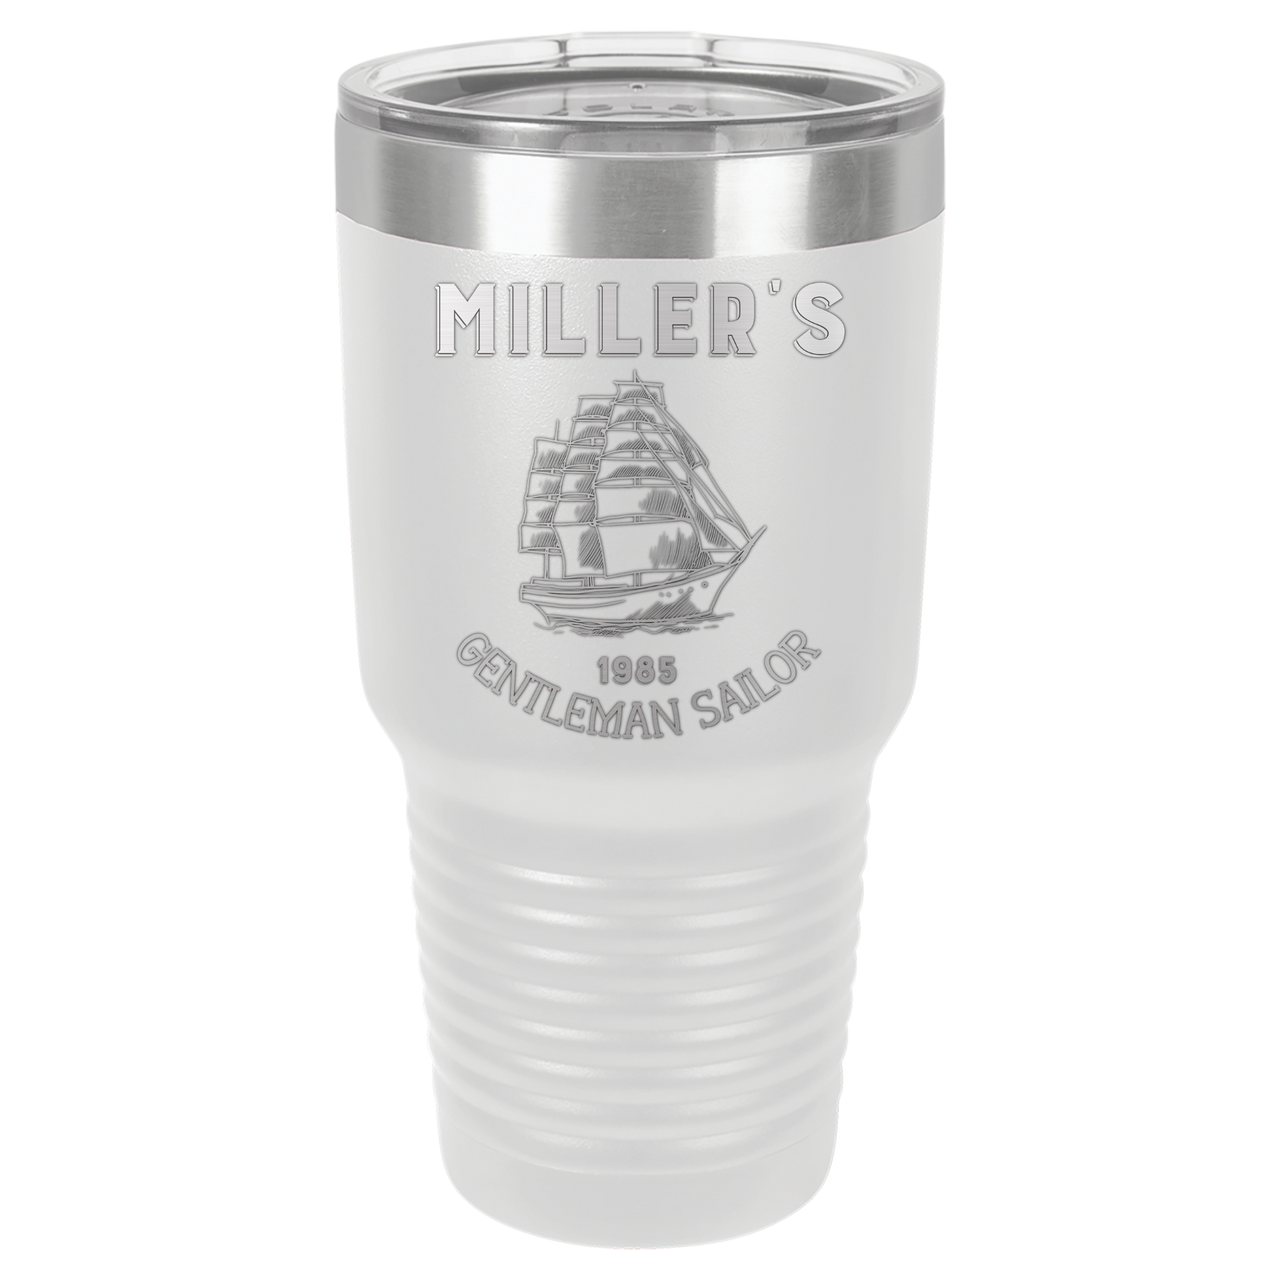 Miller's Gentleman Sailor Tumbler Bottle